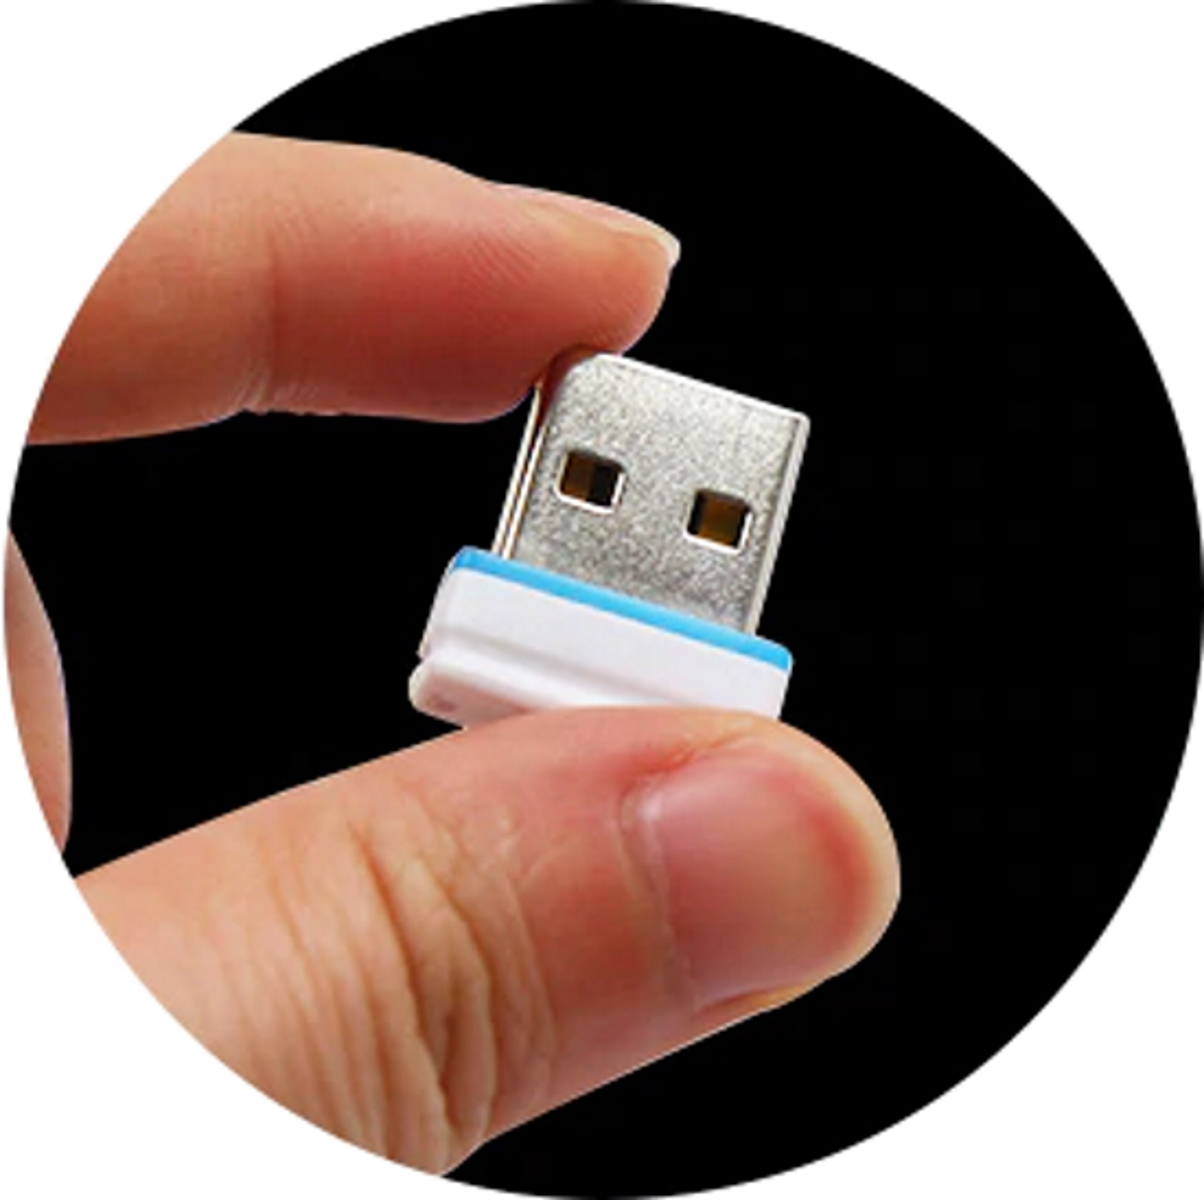 GERMANY P1 Mini GB) ®ULTRA 64 (Gelb, USB-Stick USB